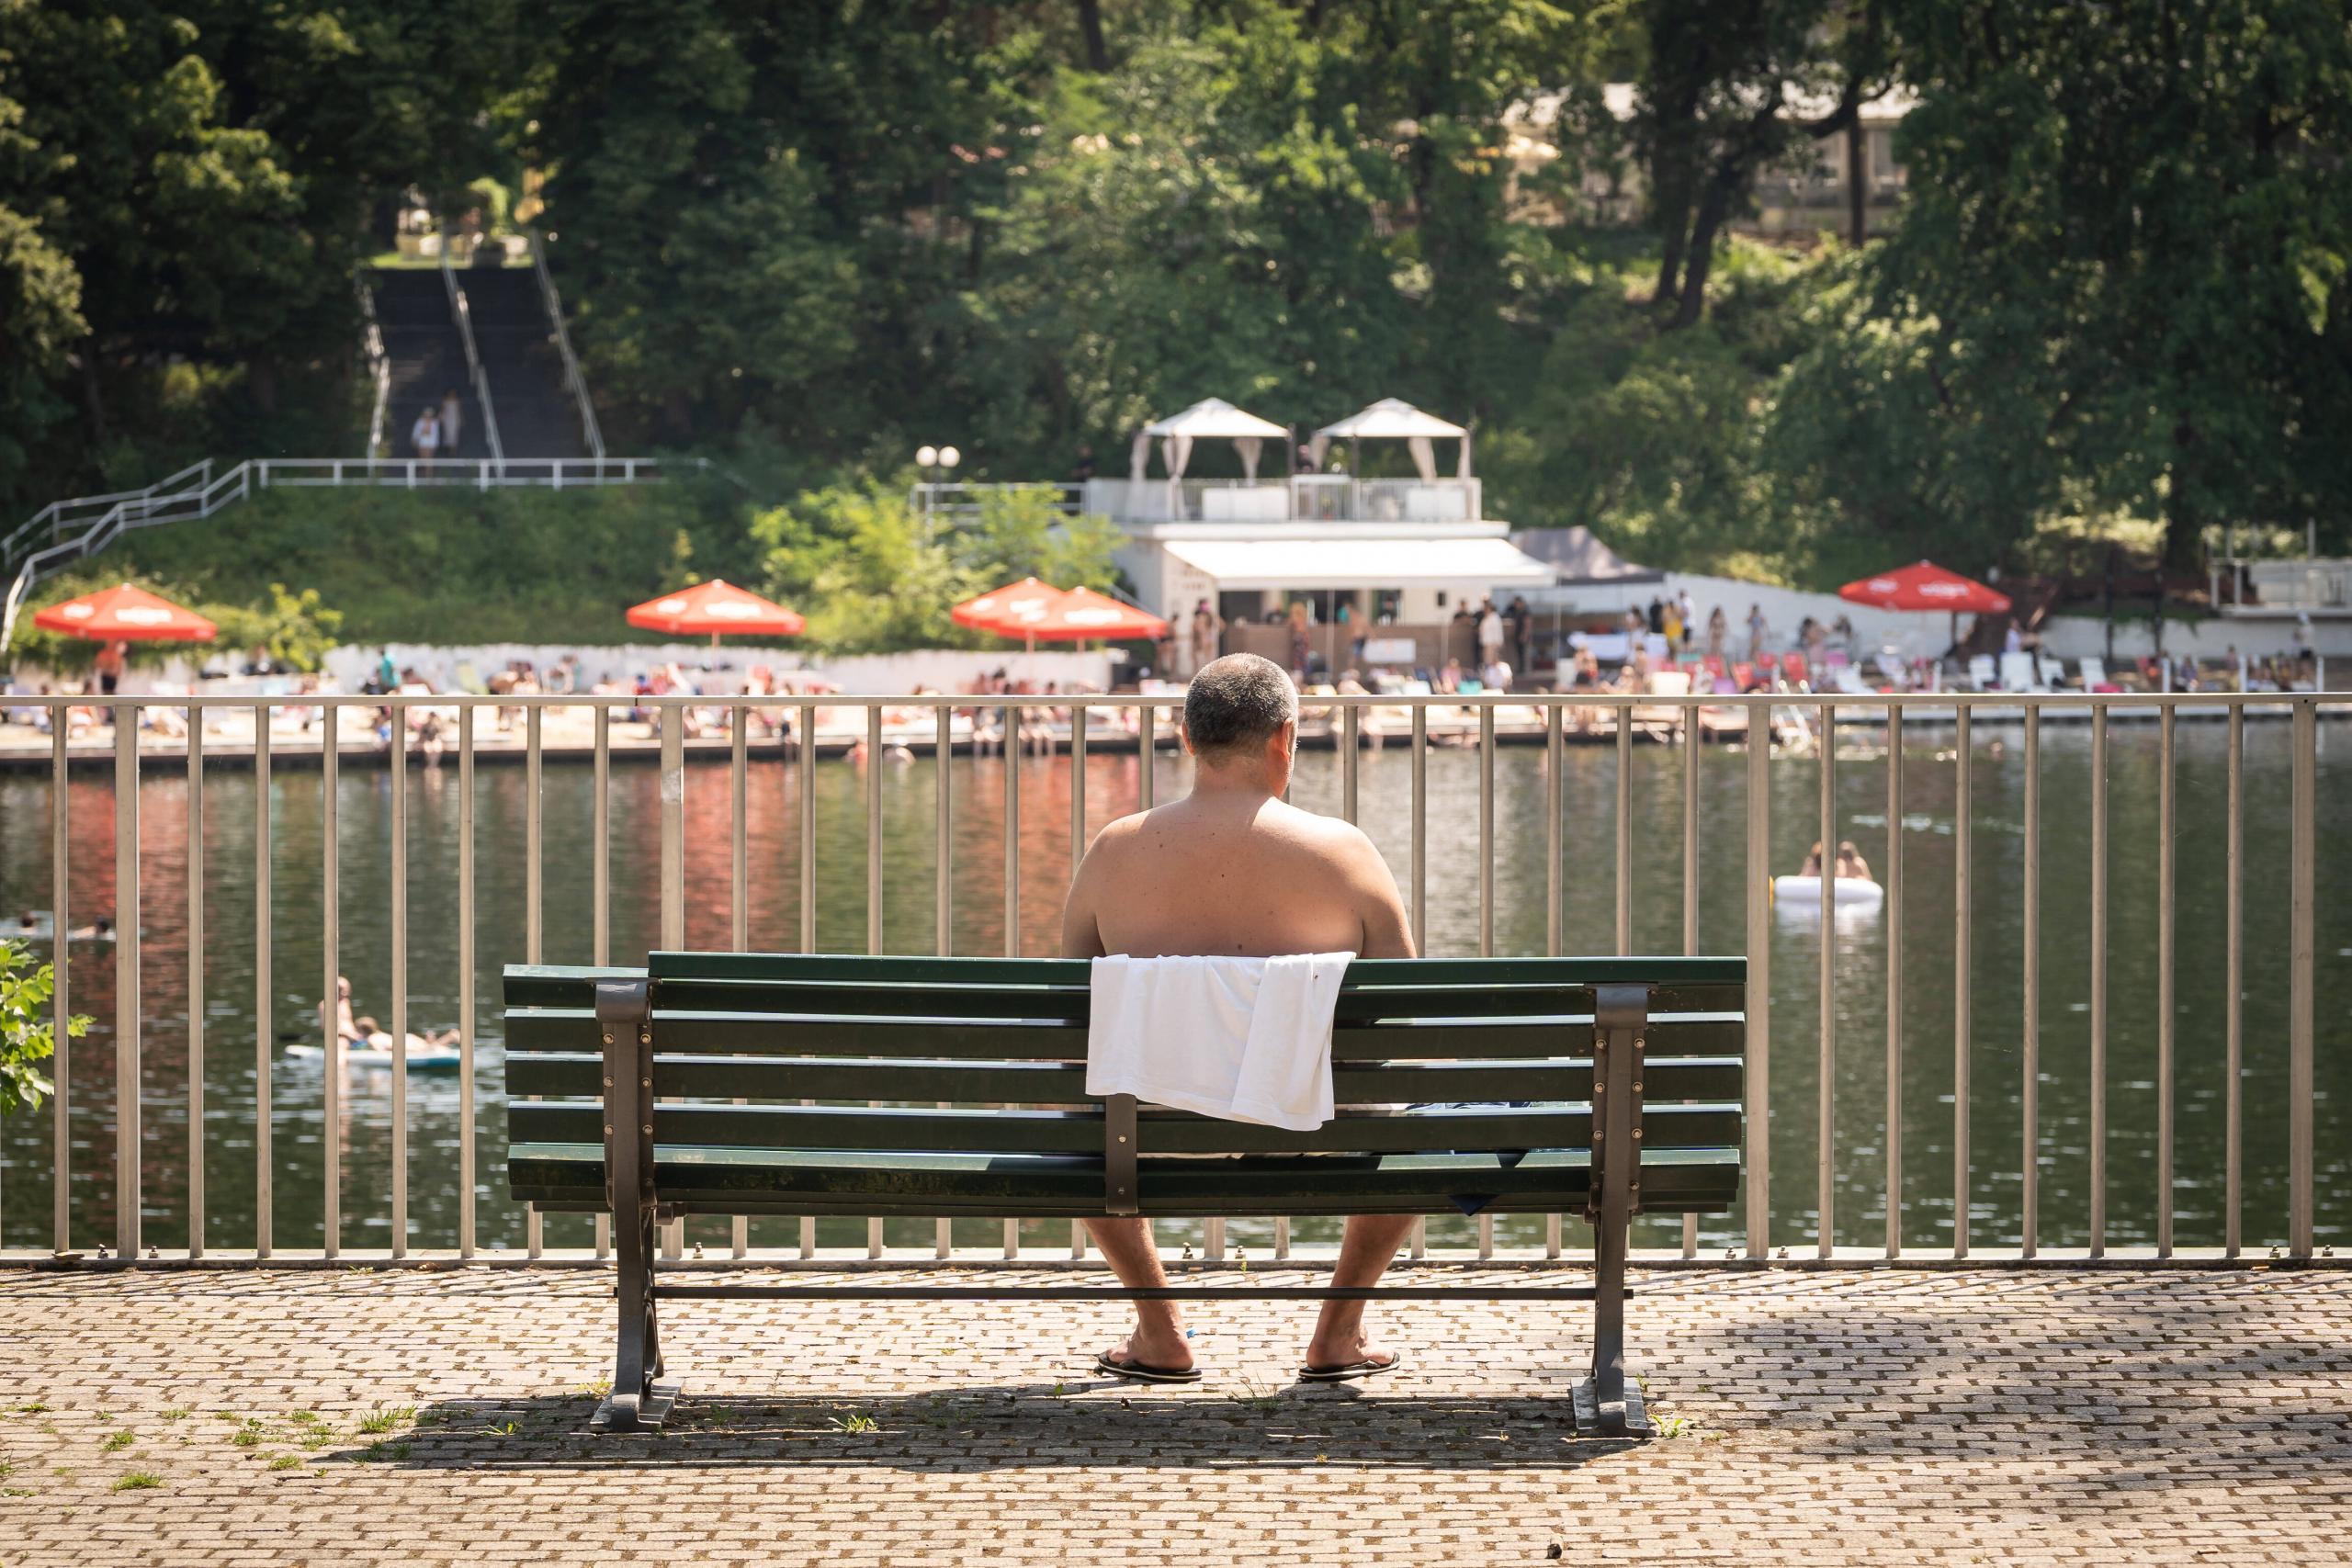 Mit mehr öffentlichen Badestellen und Schwimmbädern würde die Hitze für alle erträglicher werden, Berlin, 20. Juli 2022.